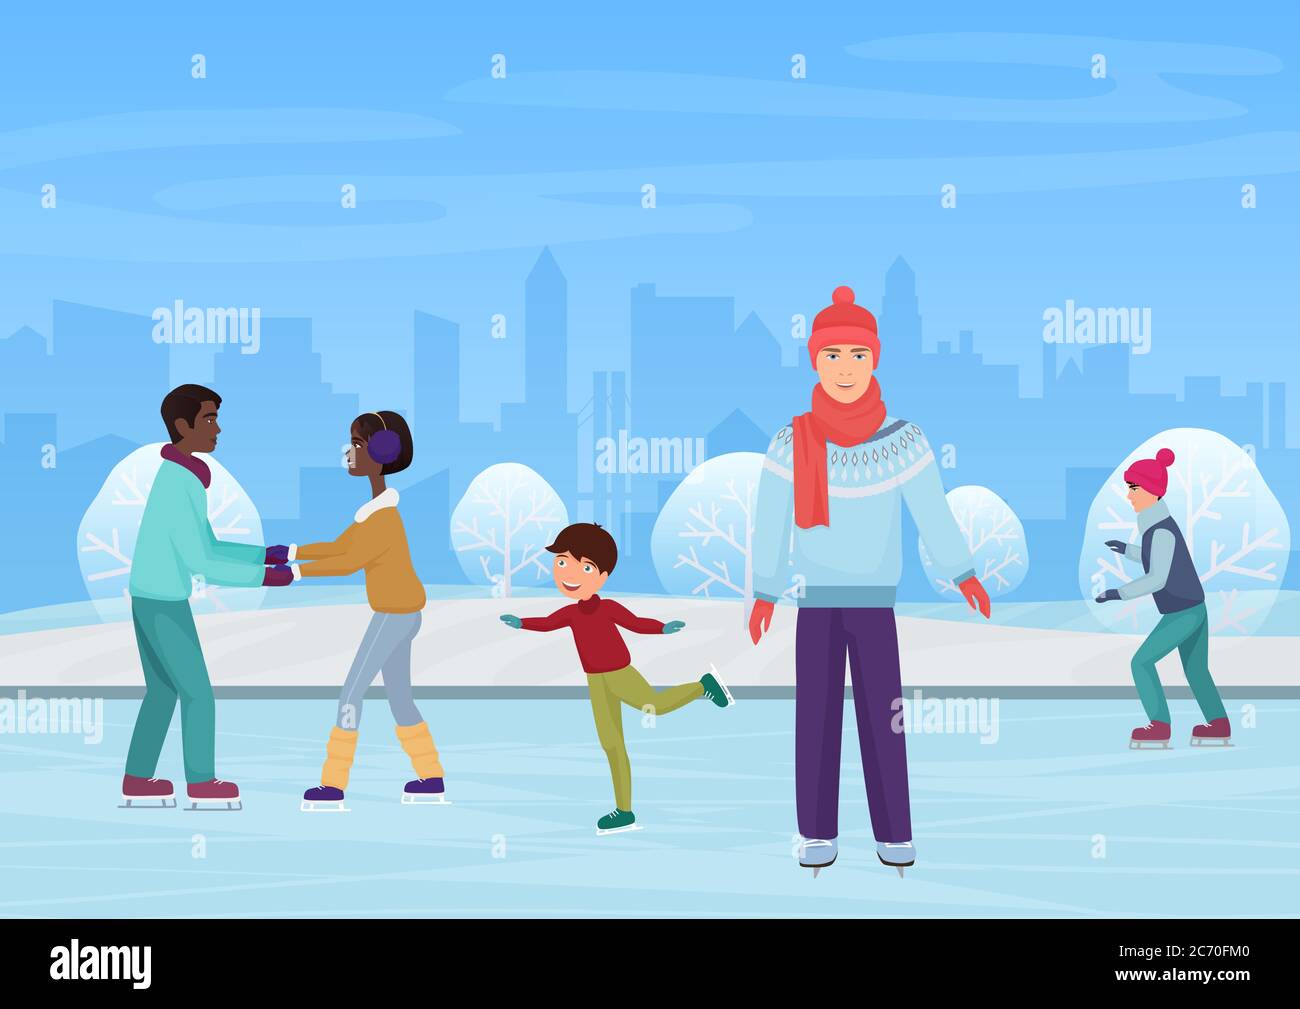 Les gens patinent sur une patinoire en plein air dans l'illustration vectorielle d'hiver Illustration de Vecteur